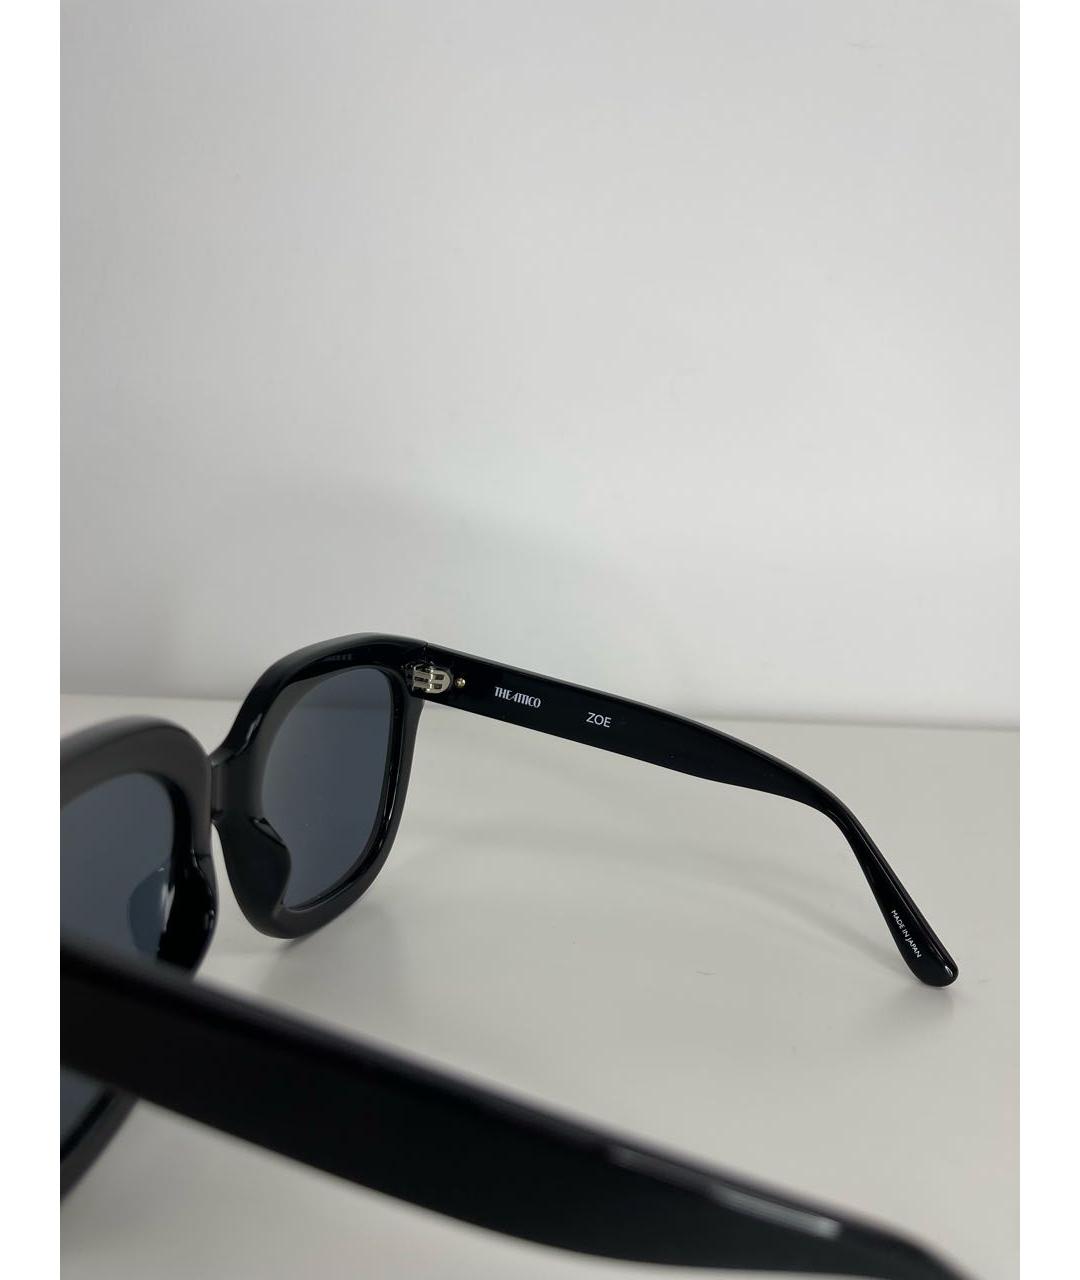 THE ATTICO Черные пластиковые солнцезащитные очки, фото 4